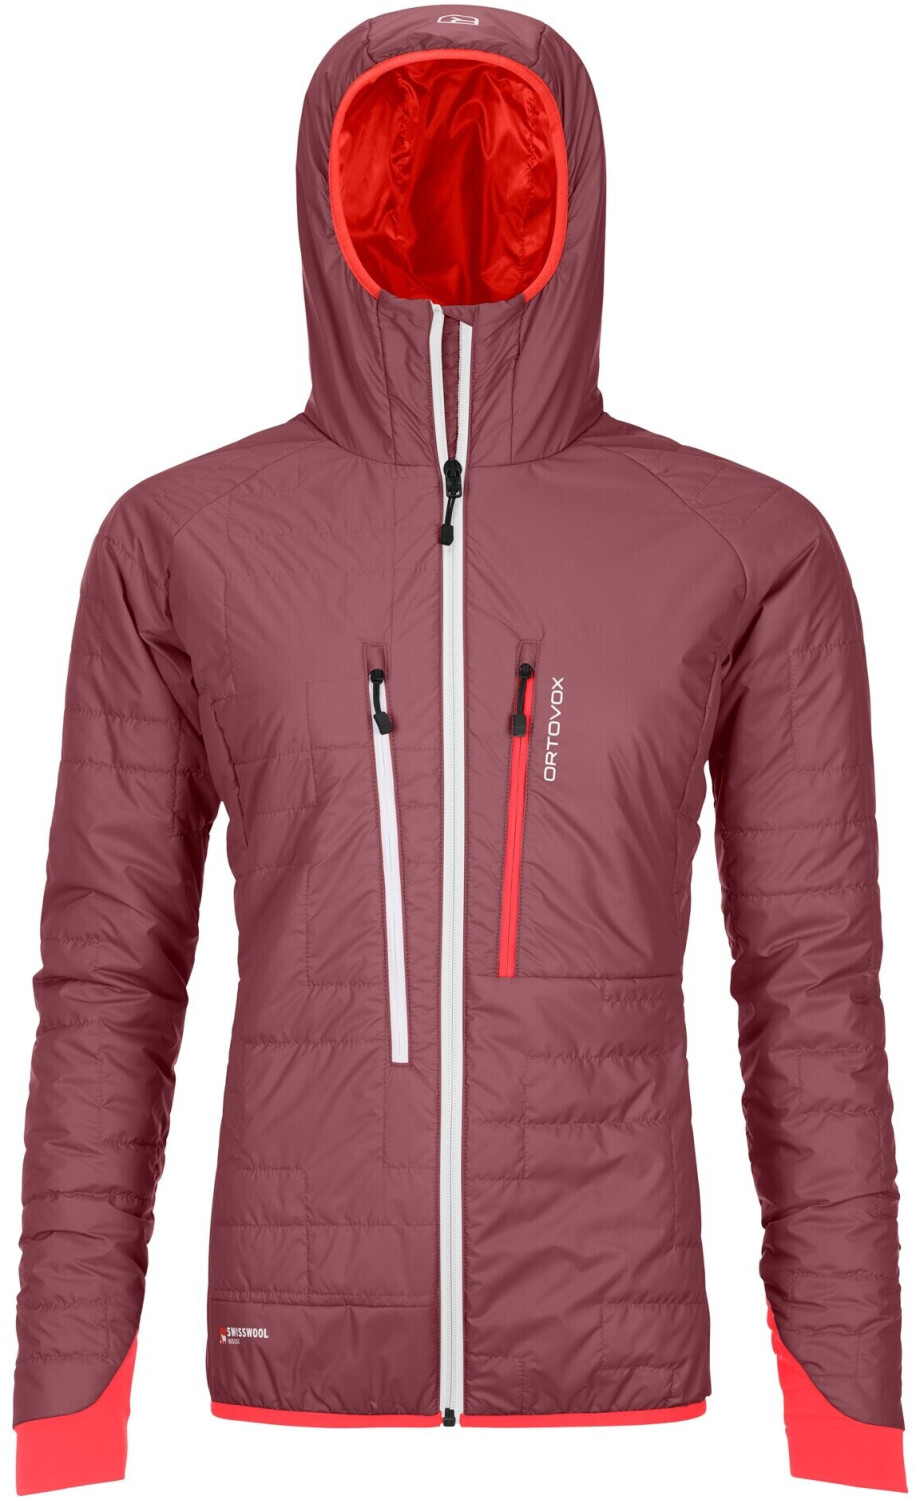 Ortovox Swisswool Piz BOÈ Jacket Women (61065) mountain rose ab 206,90 € |  Preisvergleich bei